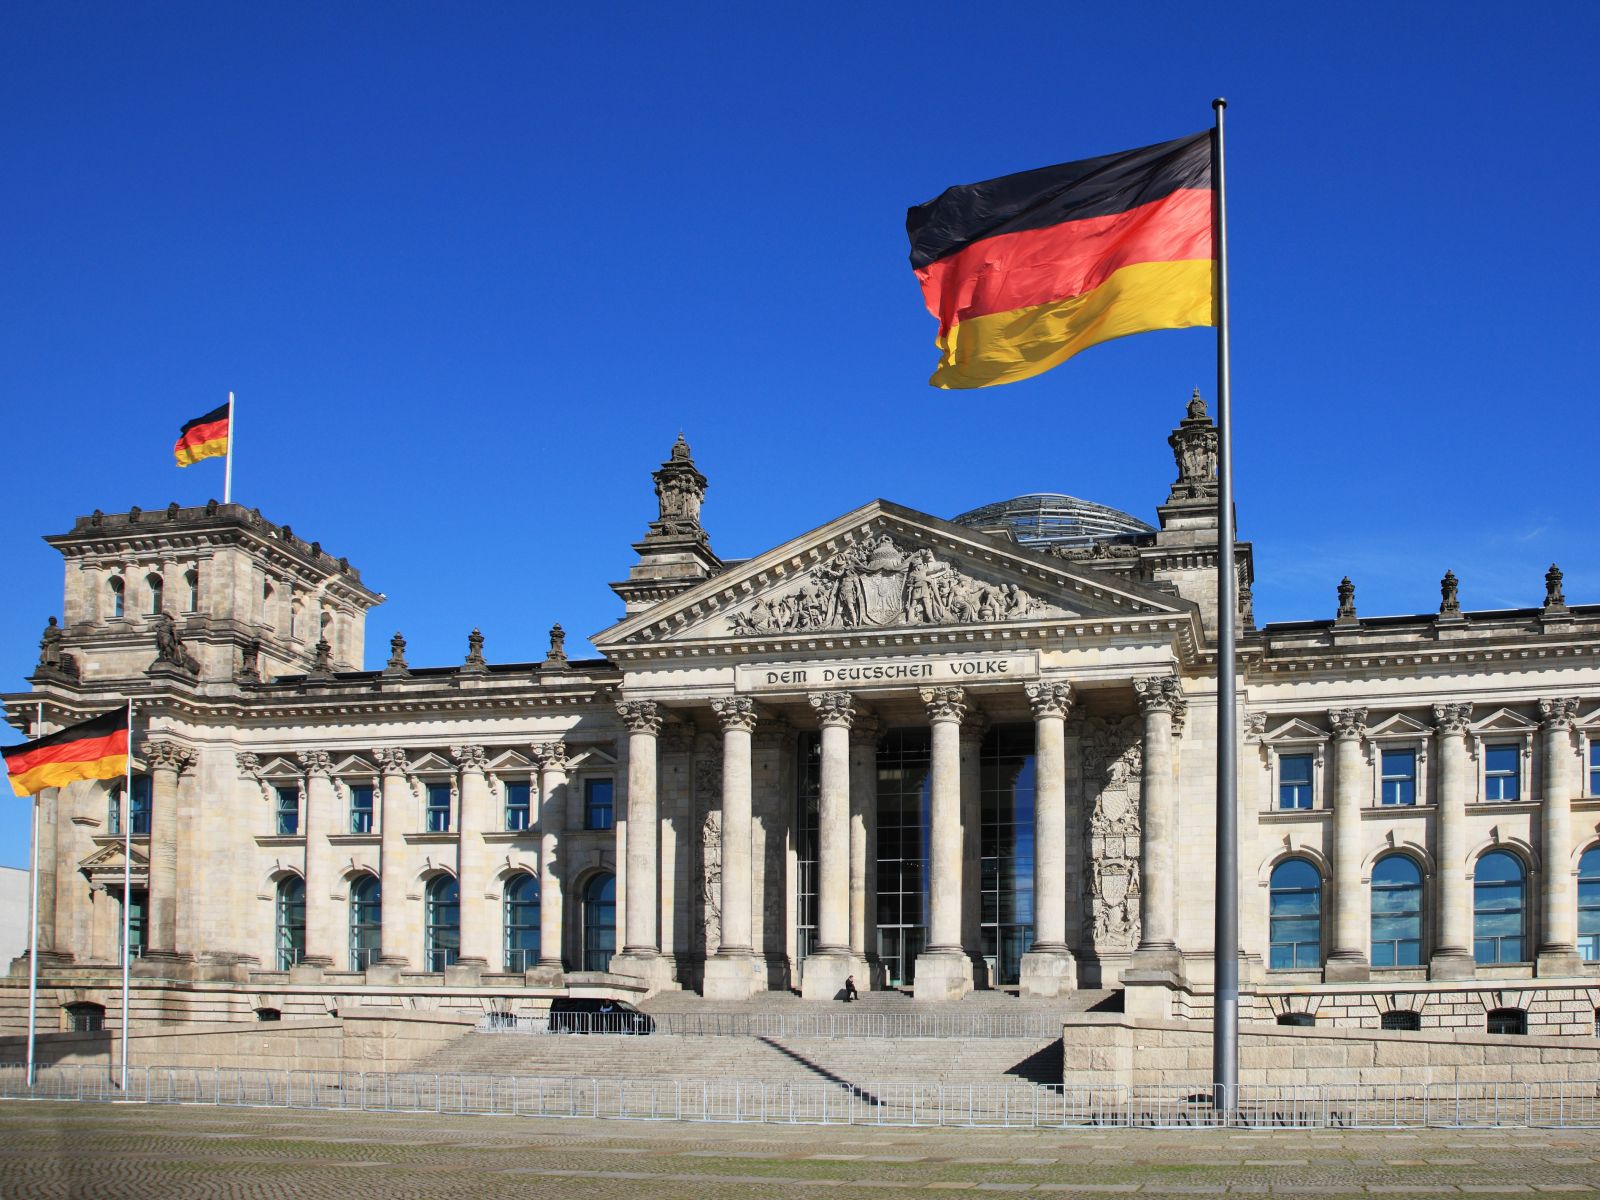 Cơ quản quản lý tài chính của Đức tăng cường cảnh báo về tiền điện tử